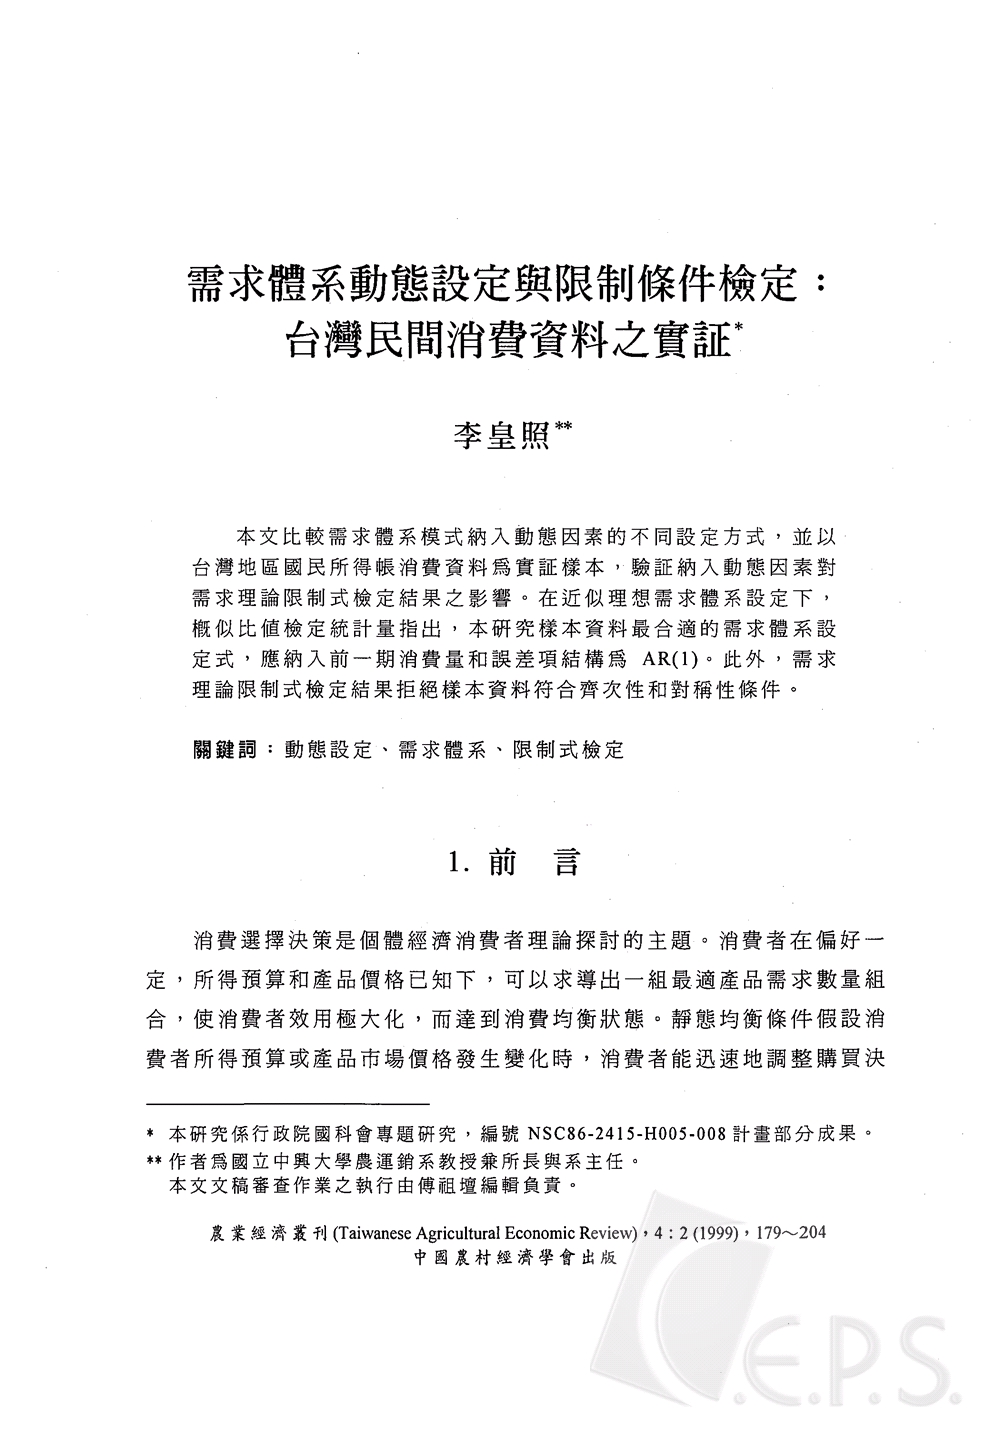 需求體系動態設定與限制條件檢定_台灣民間消費資料之實證.jpg